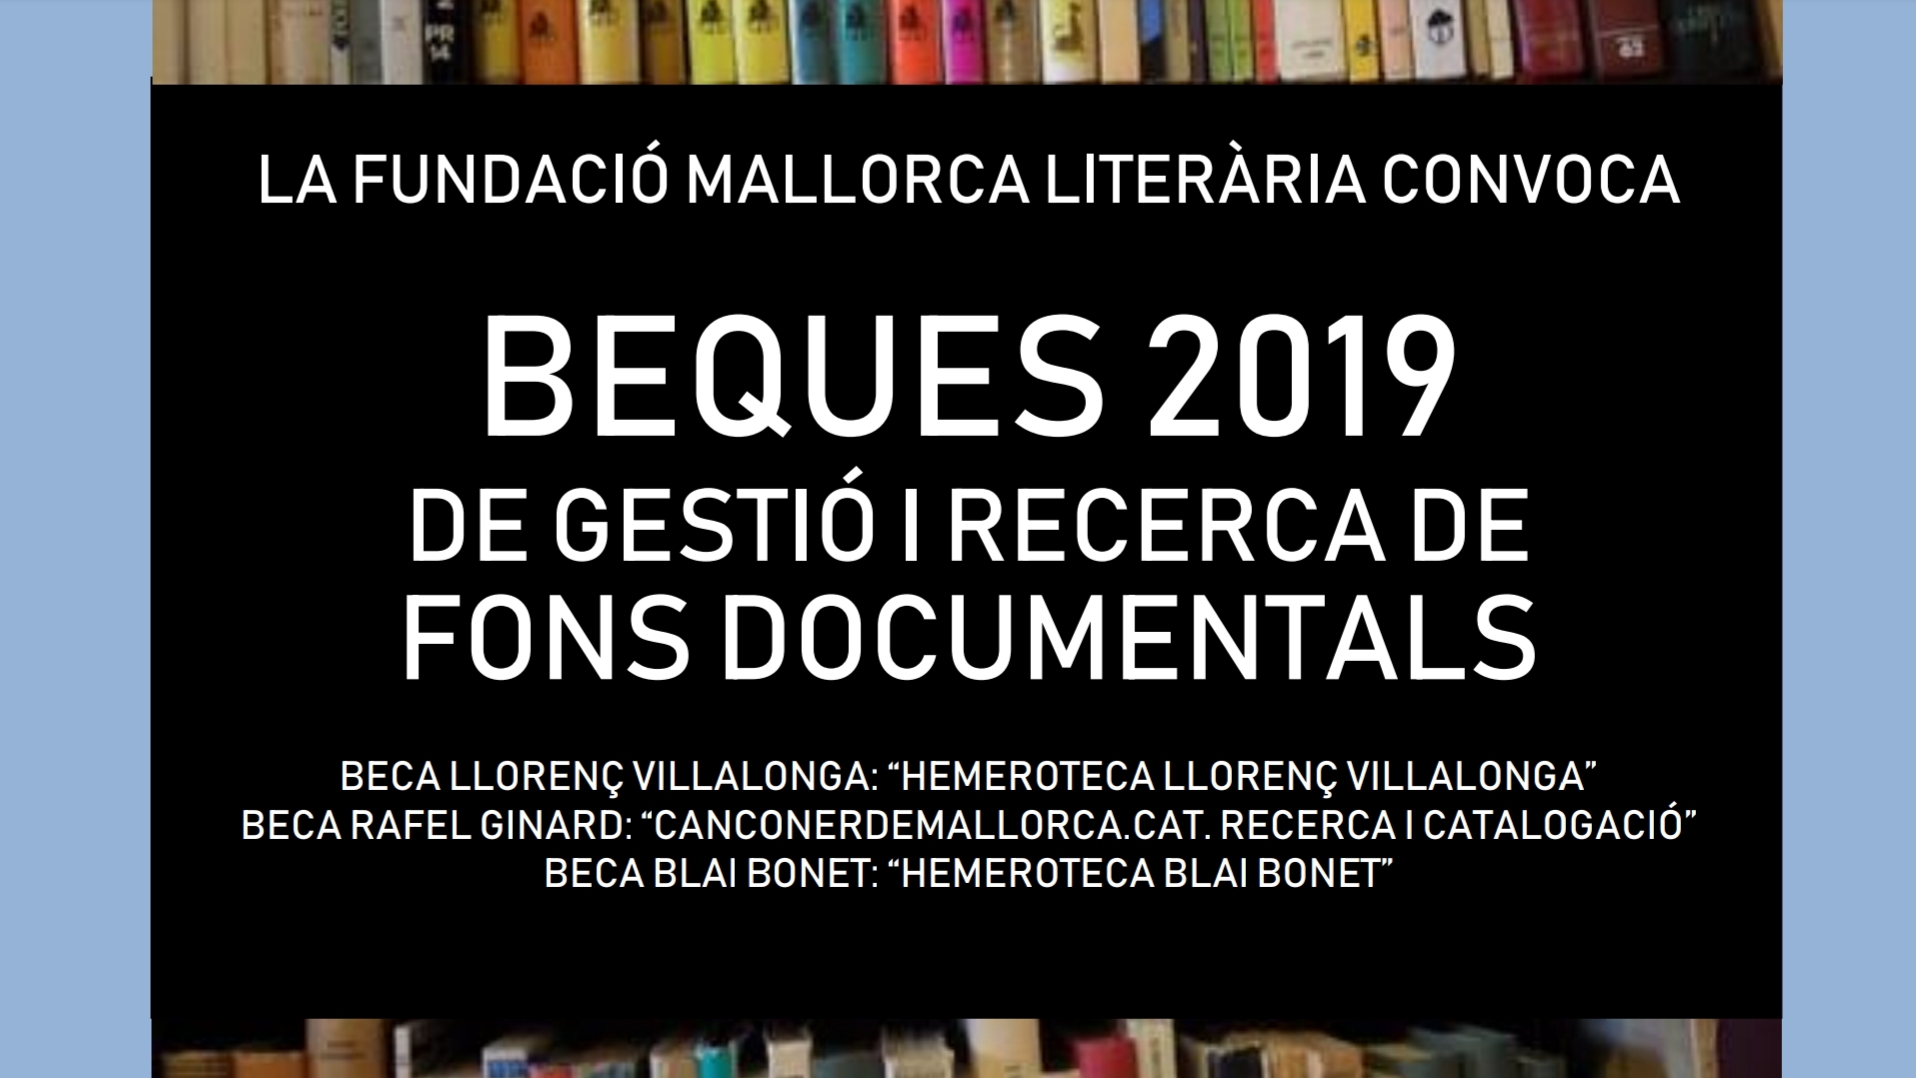 Beques Fundació Mallorca Literària